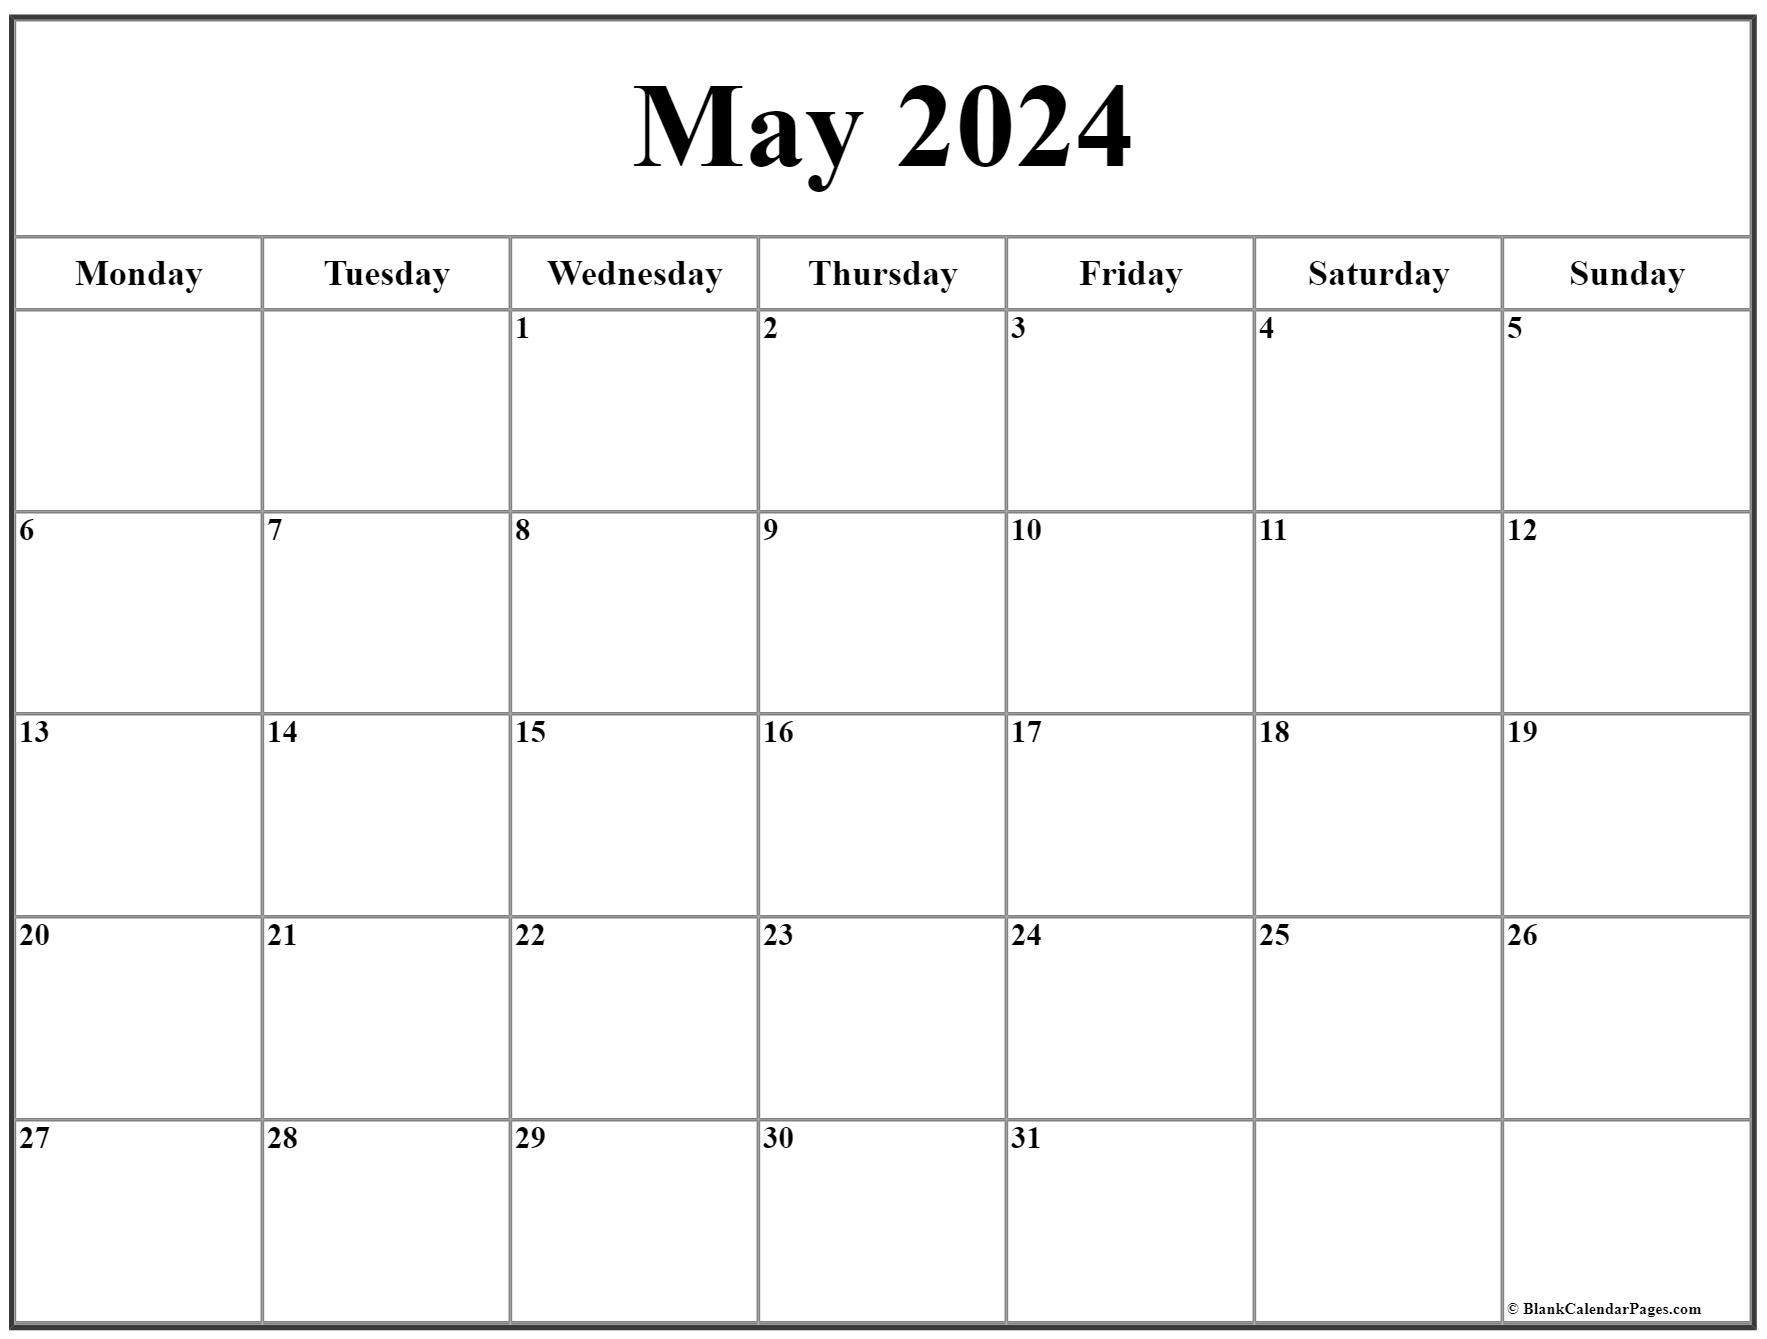 May 2020 Monday Calendar